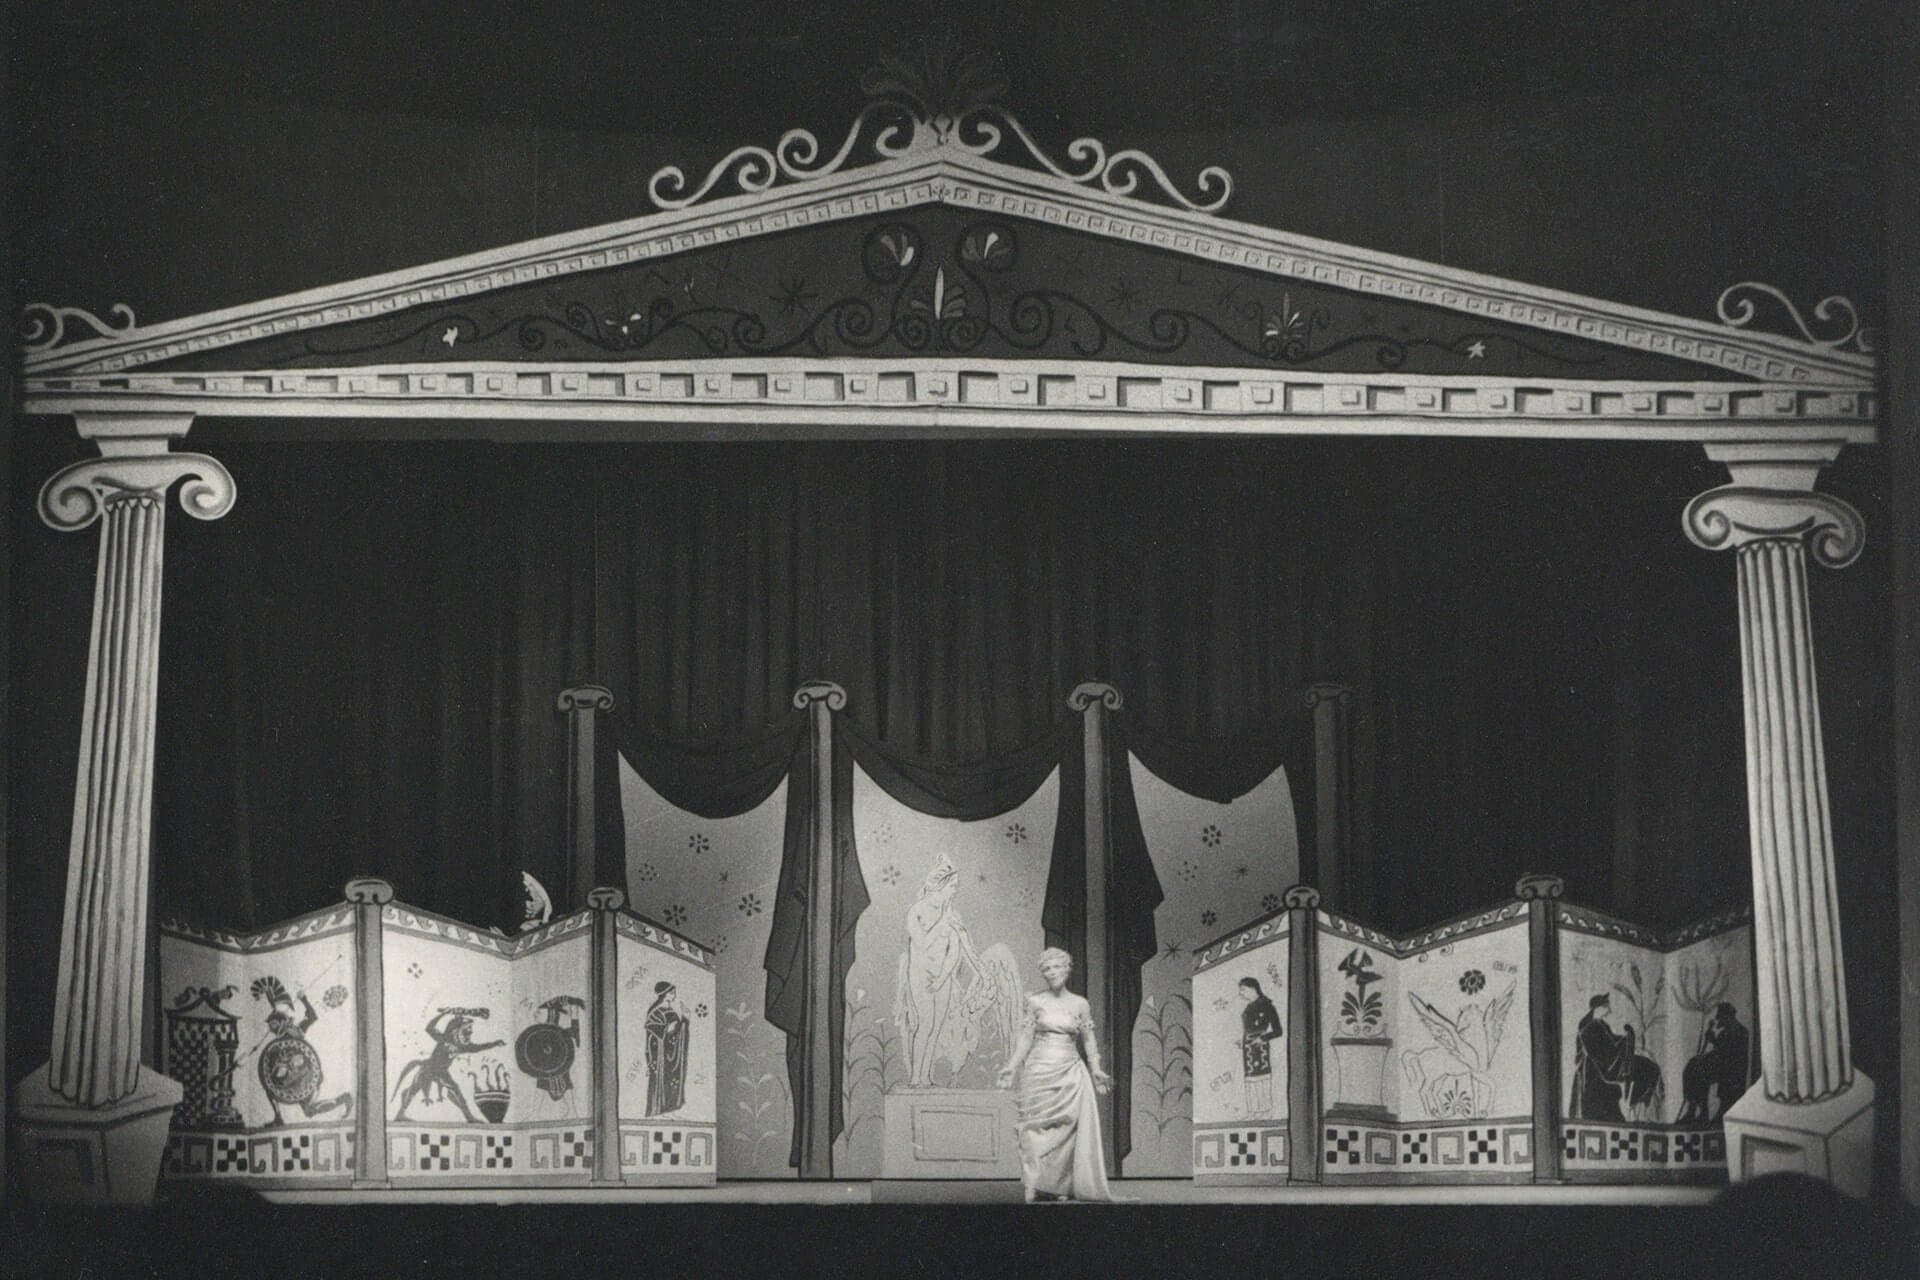 Η Ωραία Ελένη του Ζακ Όφενμπαχ, σε μουσική διεύθυνση Βάλτερ Πφέφερ, σκηνοθεσία Φρίξου Θεολογίδη, σκηνικά και κοστούμια Λίζας Ζαΐμη, Θέατρο Ολύμπια (1960/61), φωτογραφία από το αρχείο της ΕΛΣ.